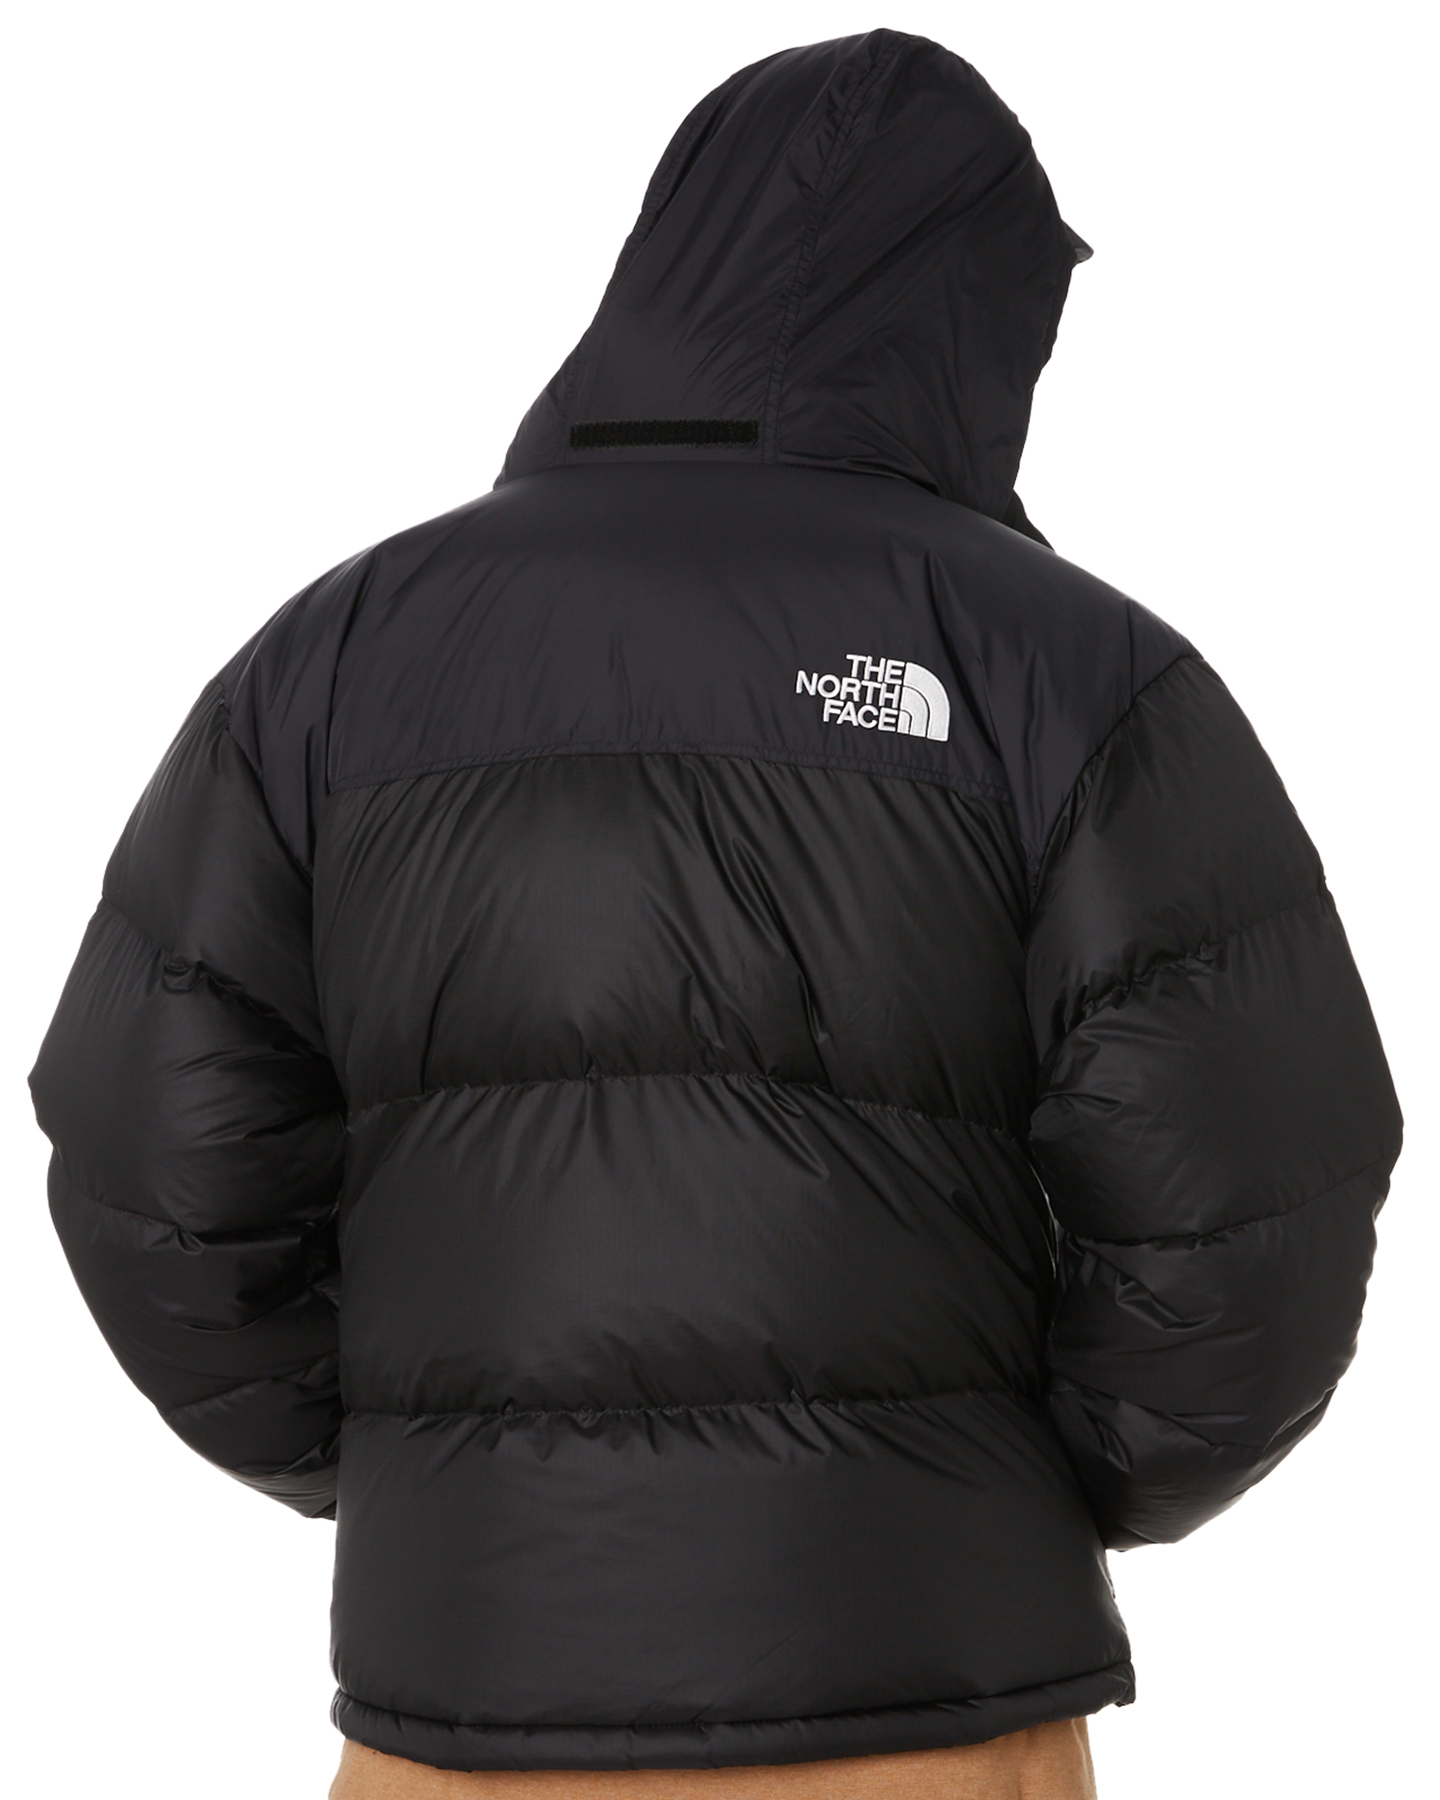 North Face Nuptse Jacket Sale Mens - jacketl